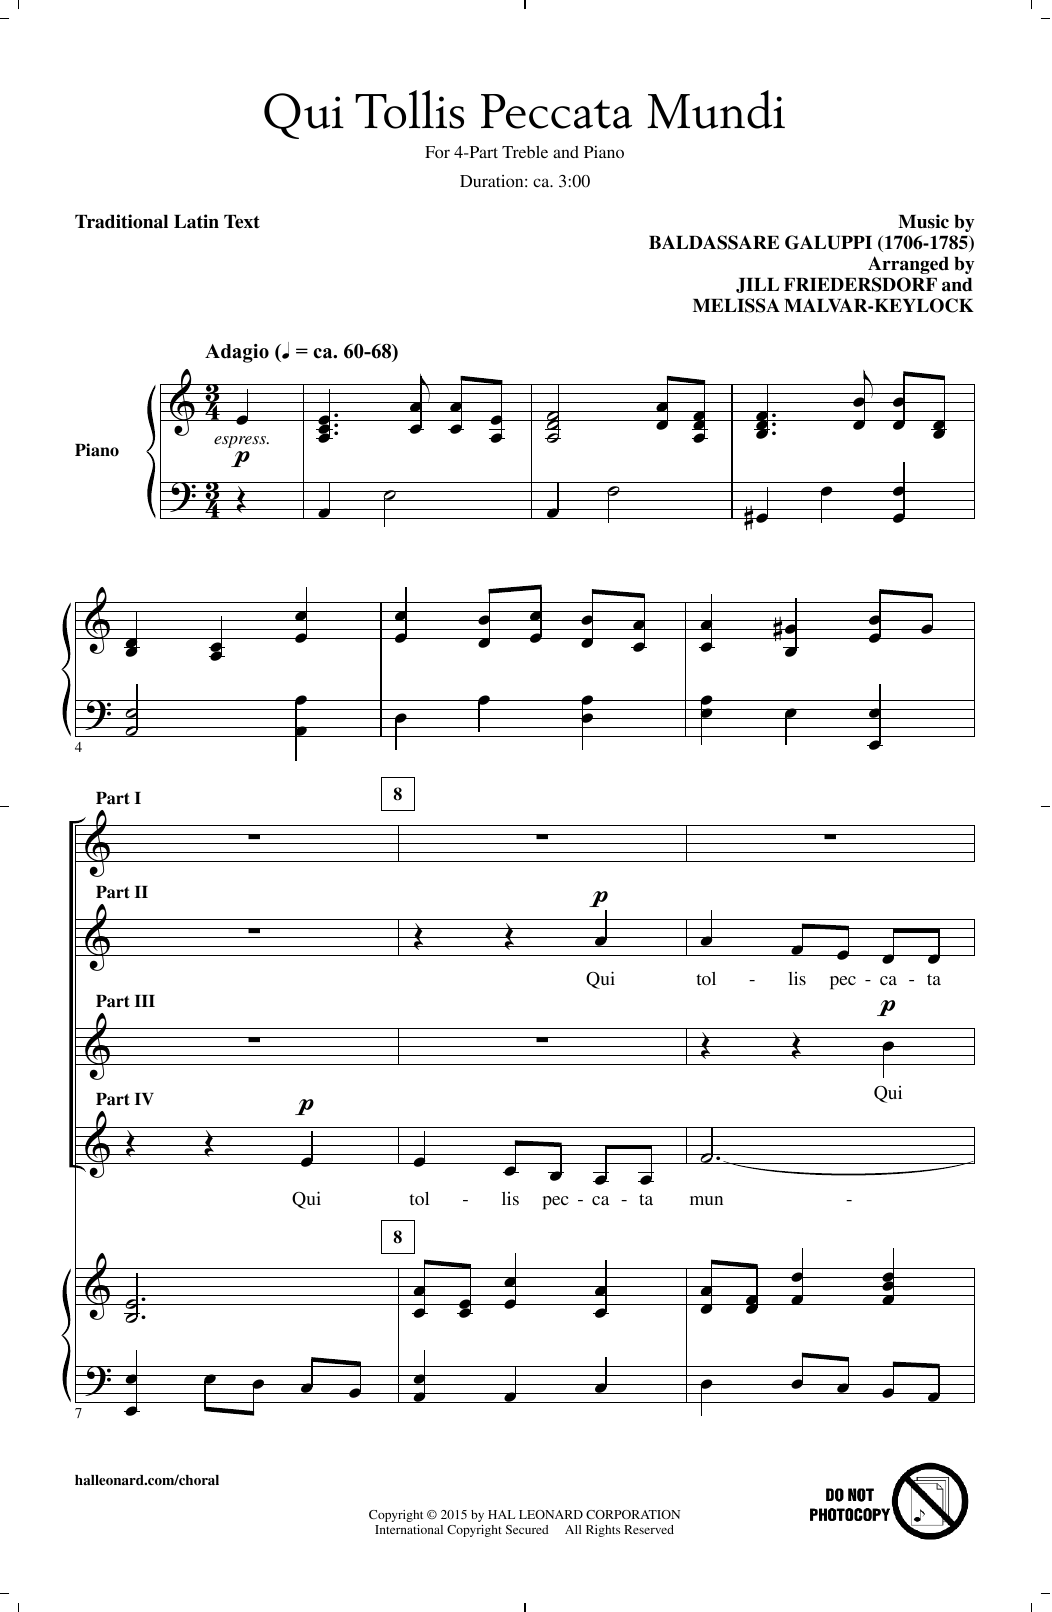 Melissa Malvar-Keylock Qui Tollis Peccata Mundi Sheet Music Notes & Chords for 4-Part - Download or Print PDF